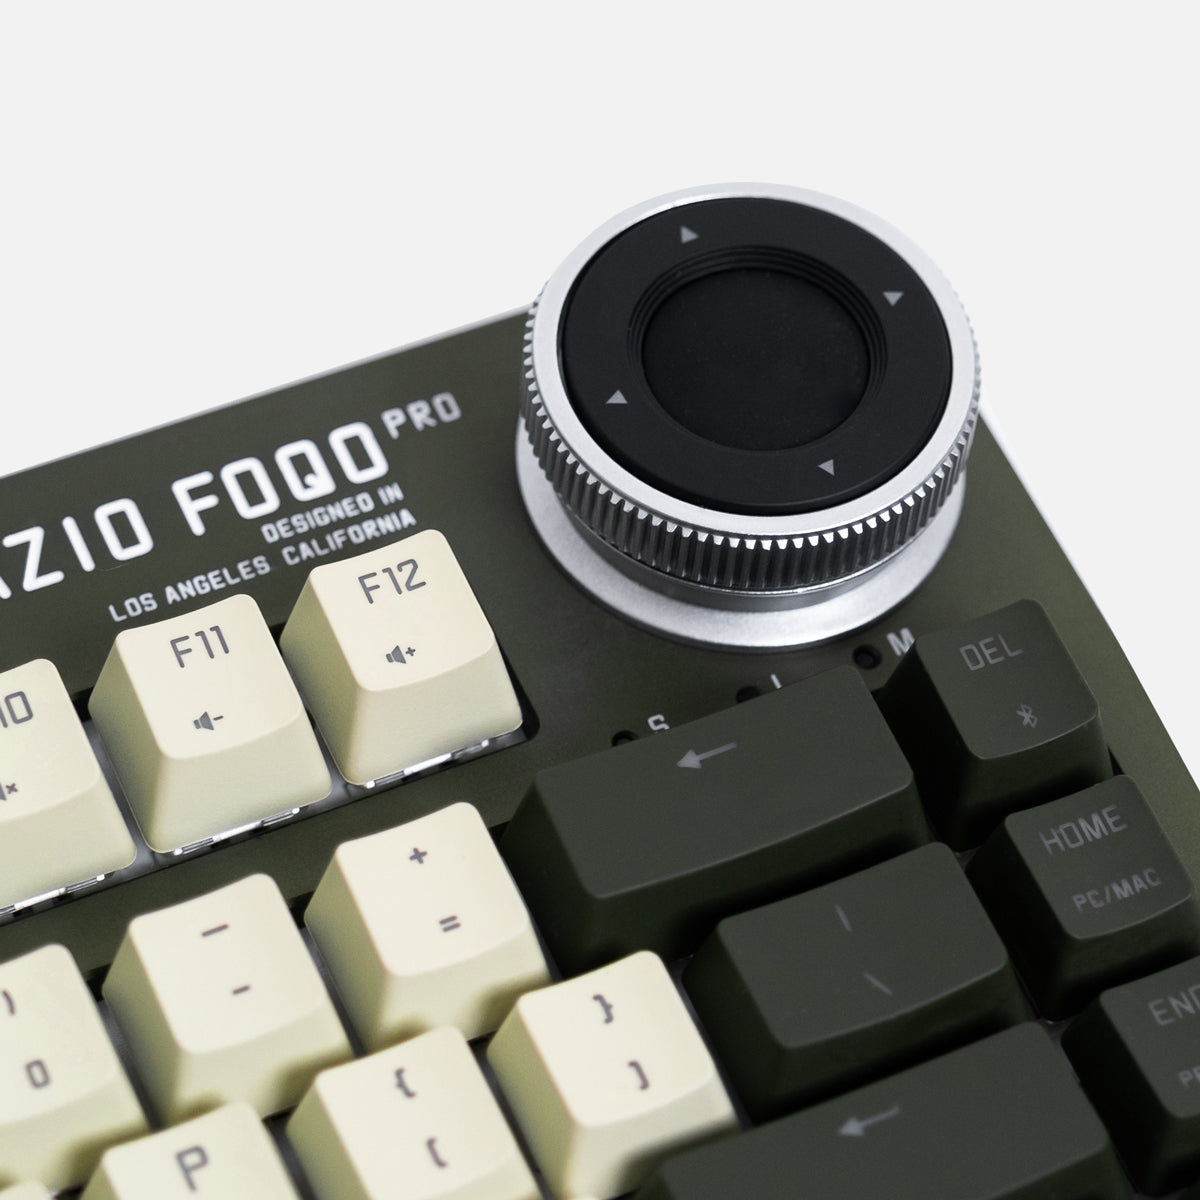 لوحة مفاتيح Foqo Pro لاسلكية قابلة للتبديل السريع